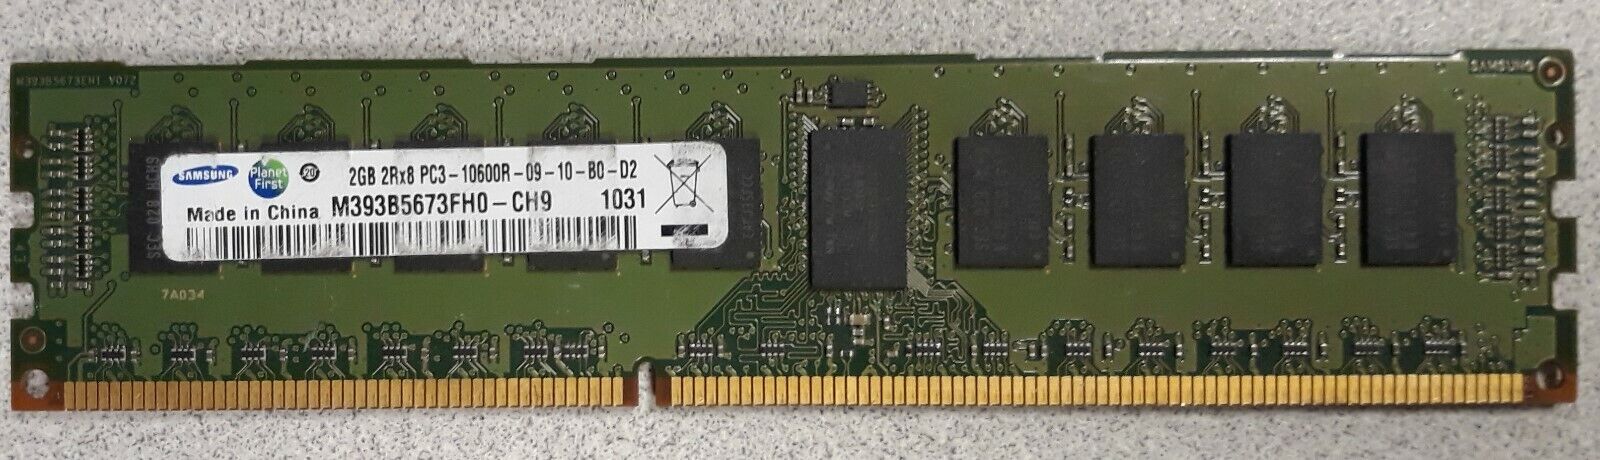 Samsung 2GB 2rx8 PC3-10600R-09-10-B0-D2 Server Memory M393B5673FH0-CH9